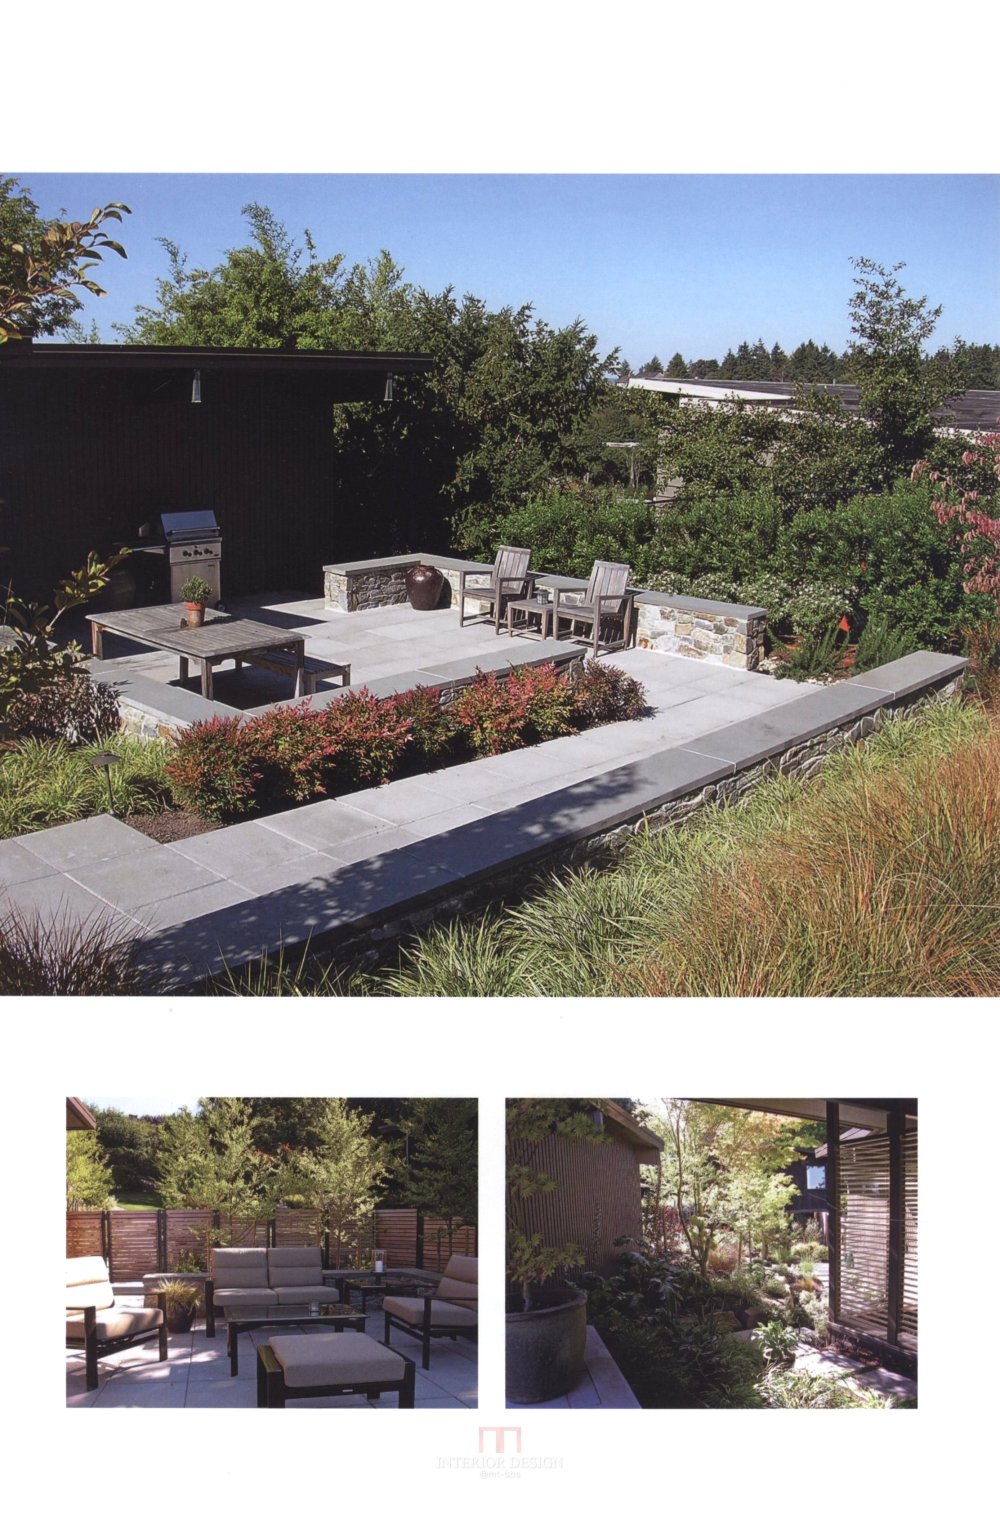 别墅庭园规划与设计Villa Garden Plan & Design_183.jpg